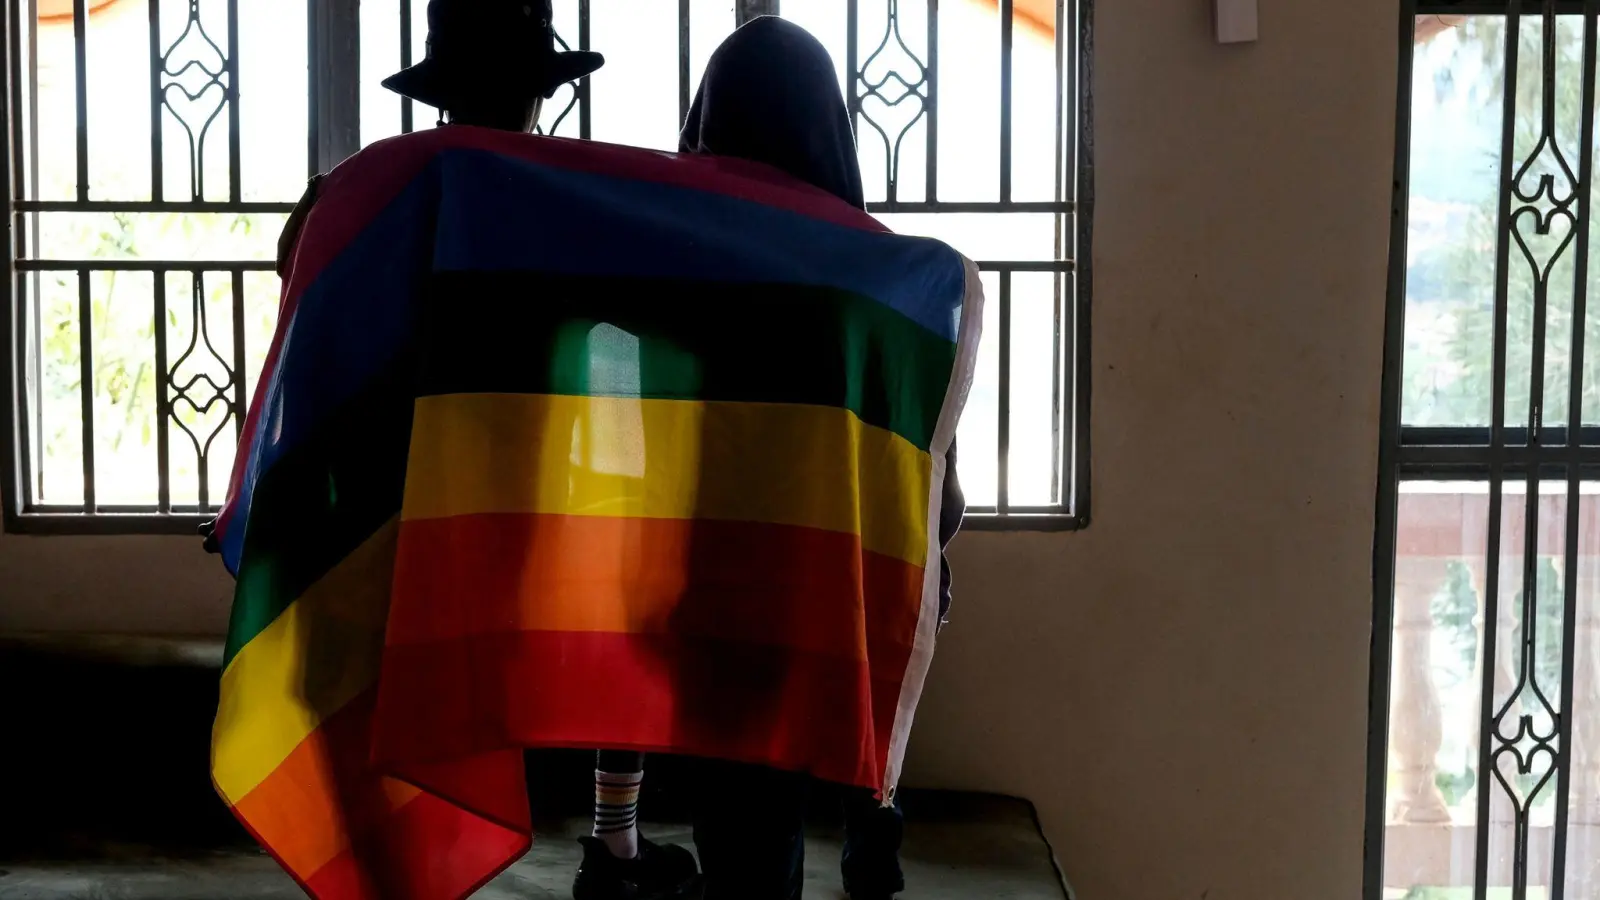 Immer wieder gab es in den vergangenen Jahren in Uganda Versuche verschiedener gesellschaftlicher Gruppen, schärfere Gesetze gegen homosexuelle Menschen einzuführen. (Foto: AP/dpa)